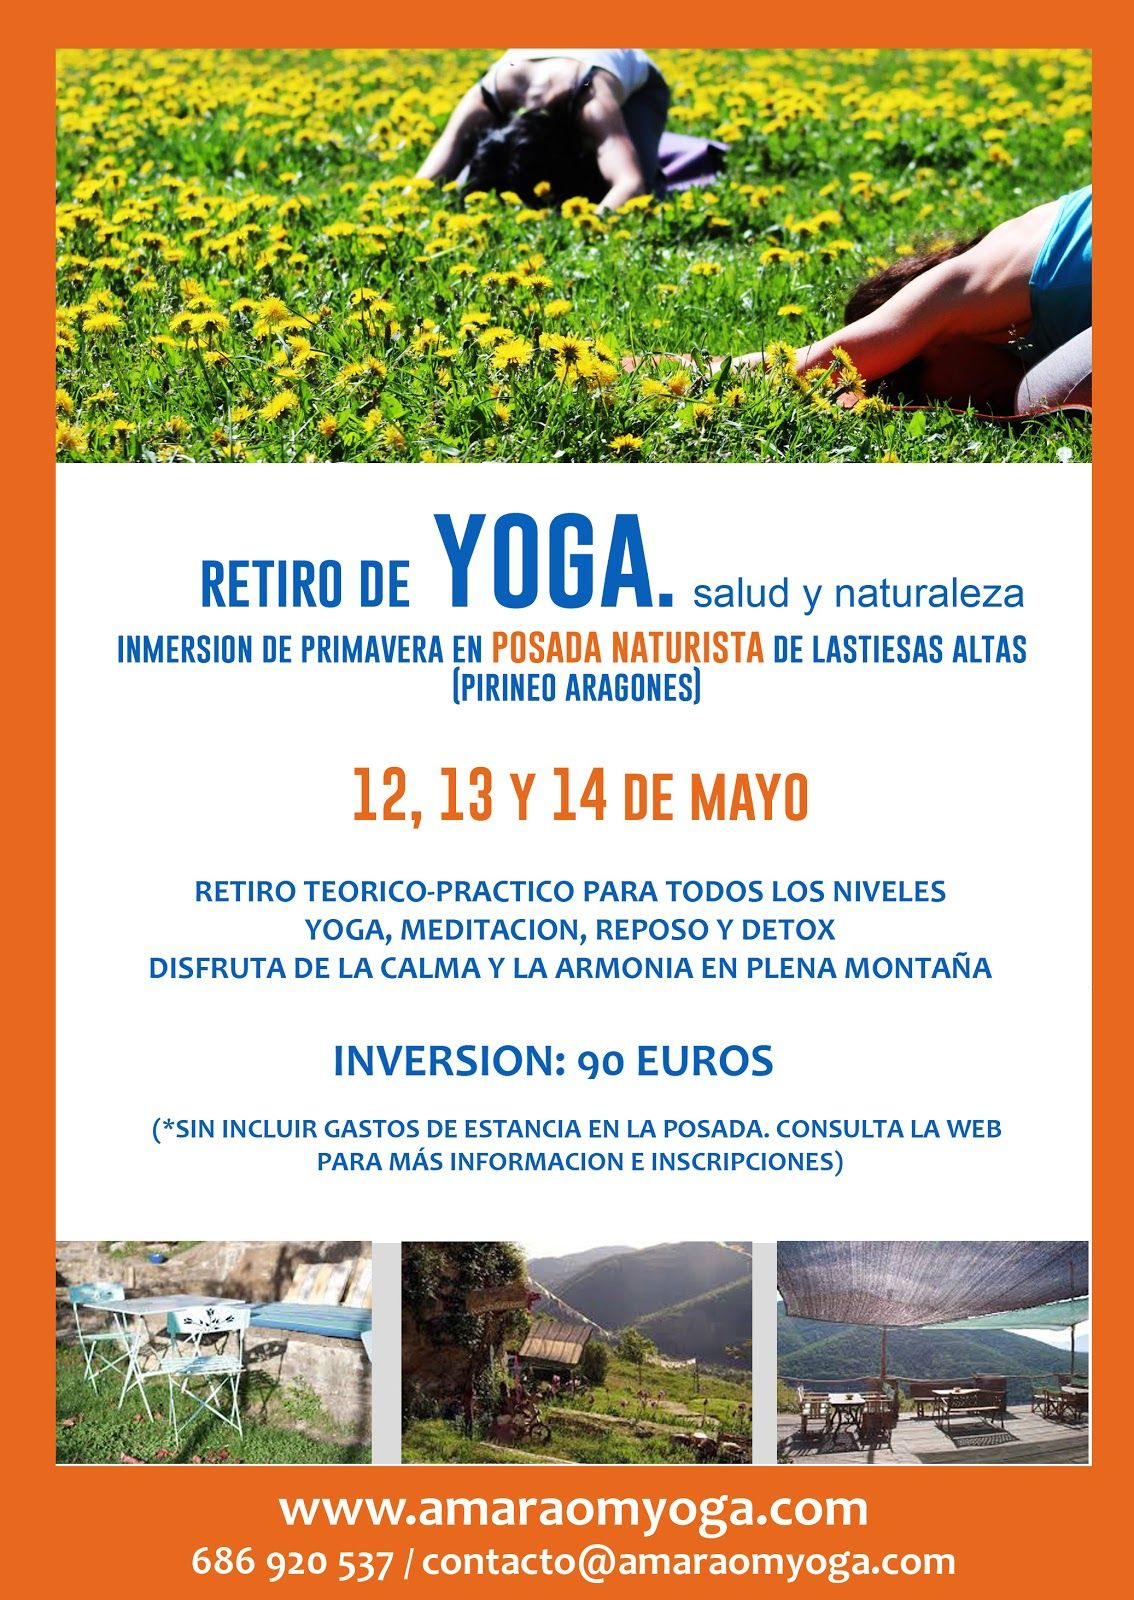 DESCRIPCIÓN DEL RETIRO Será durante los días 12, 13 Y 14 de MAYO en la POSADA NATURISTA DE LASTIESAS ALTAS (valle de Aisa. Huesca. Pirineo Aragonés).